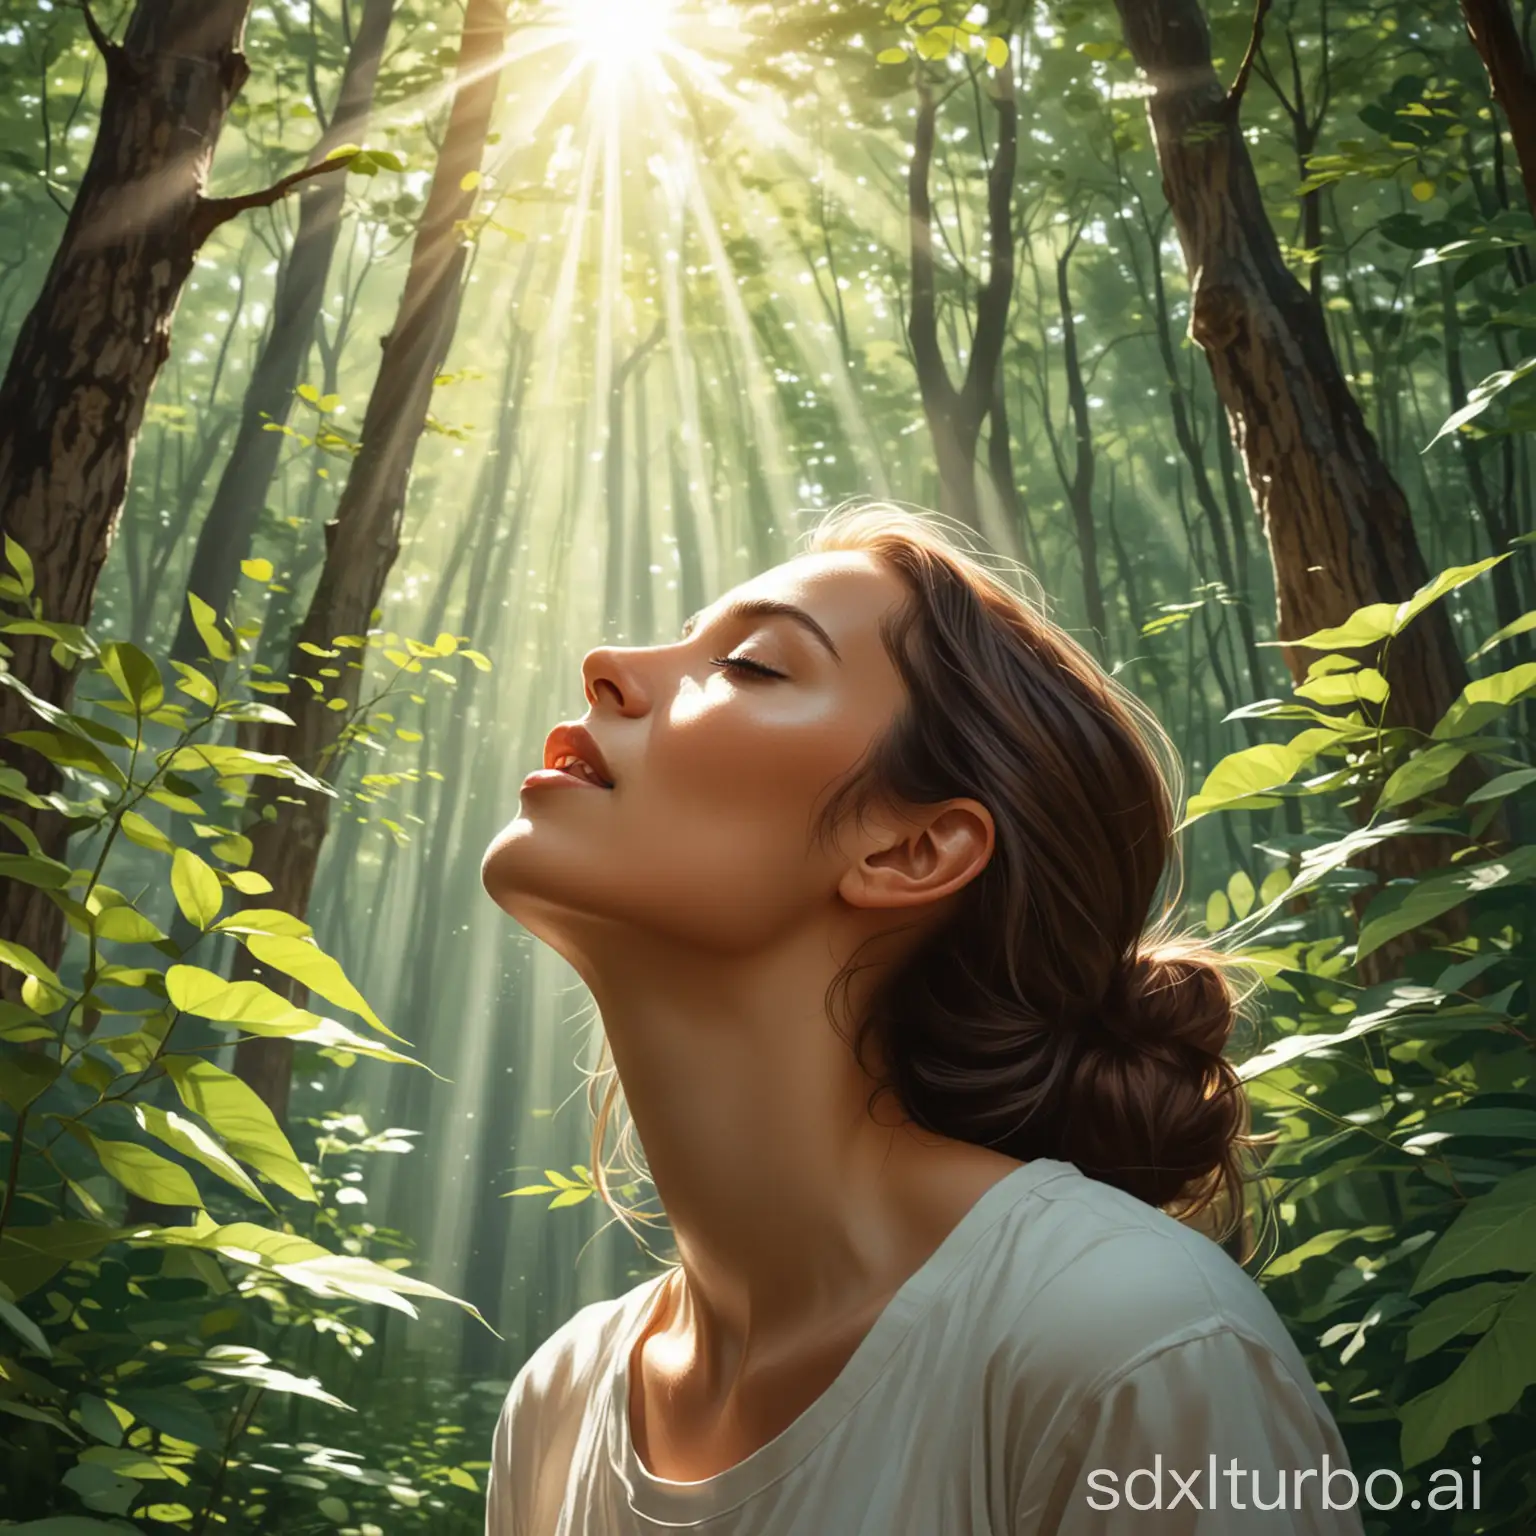 一幅插画风格的图片，展示一个人在静谧的森林中深呼吸，阳光透过树叶洒在她的身上，她的脸上洋溢着平和与宁静